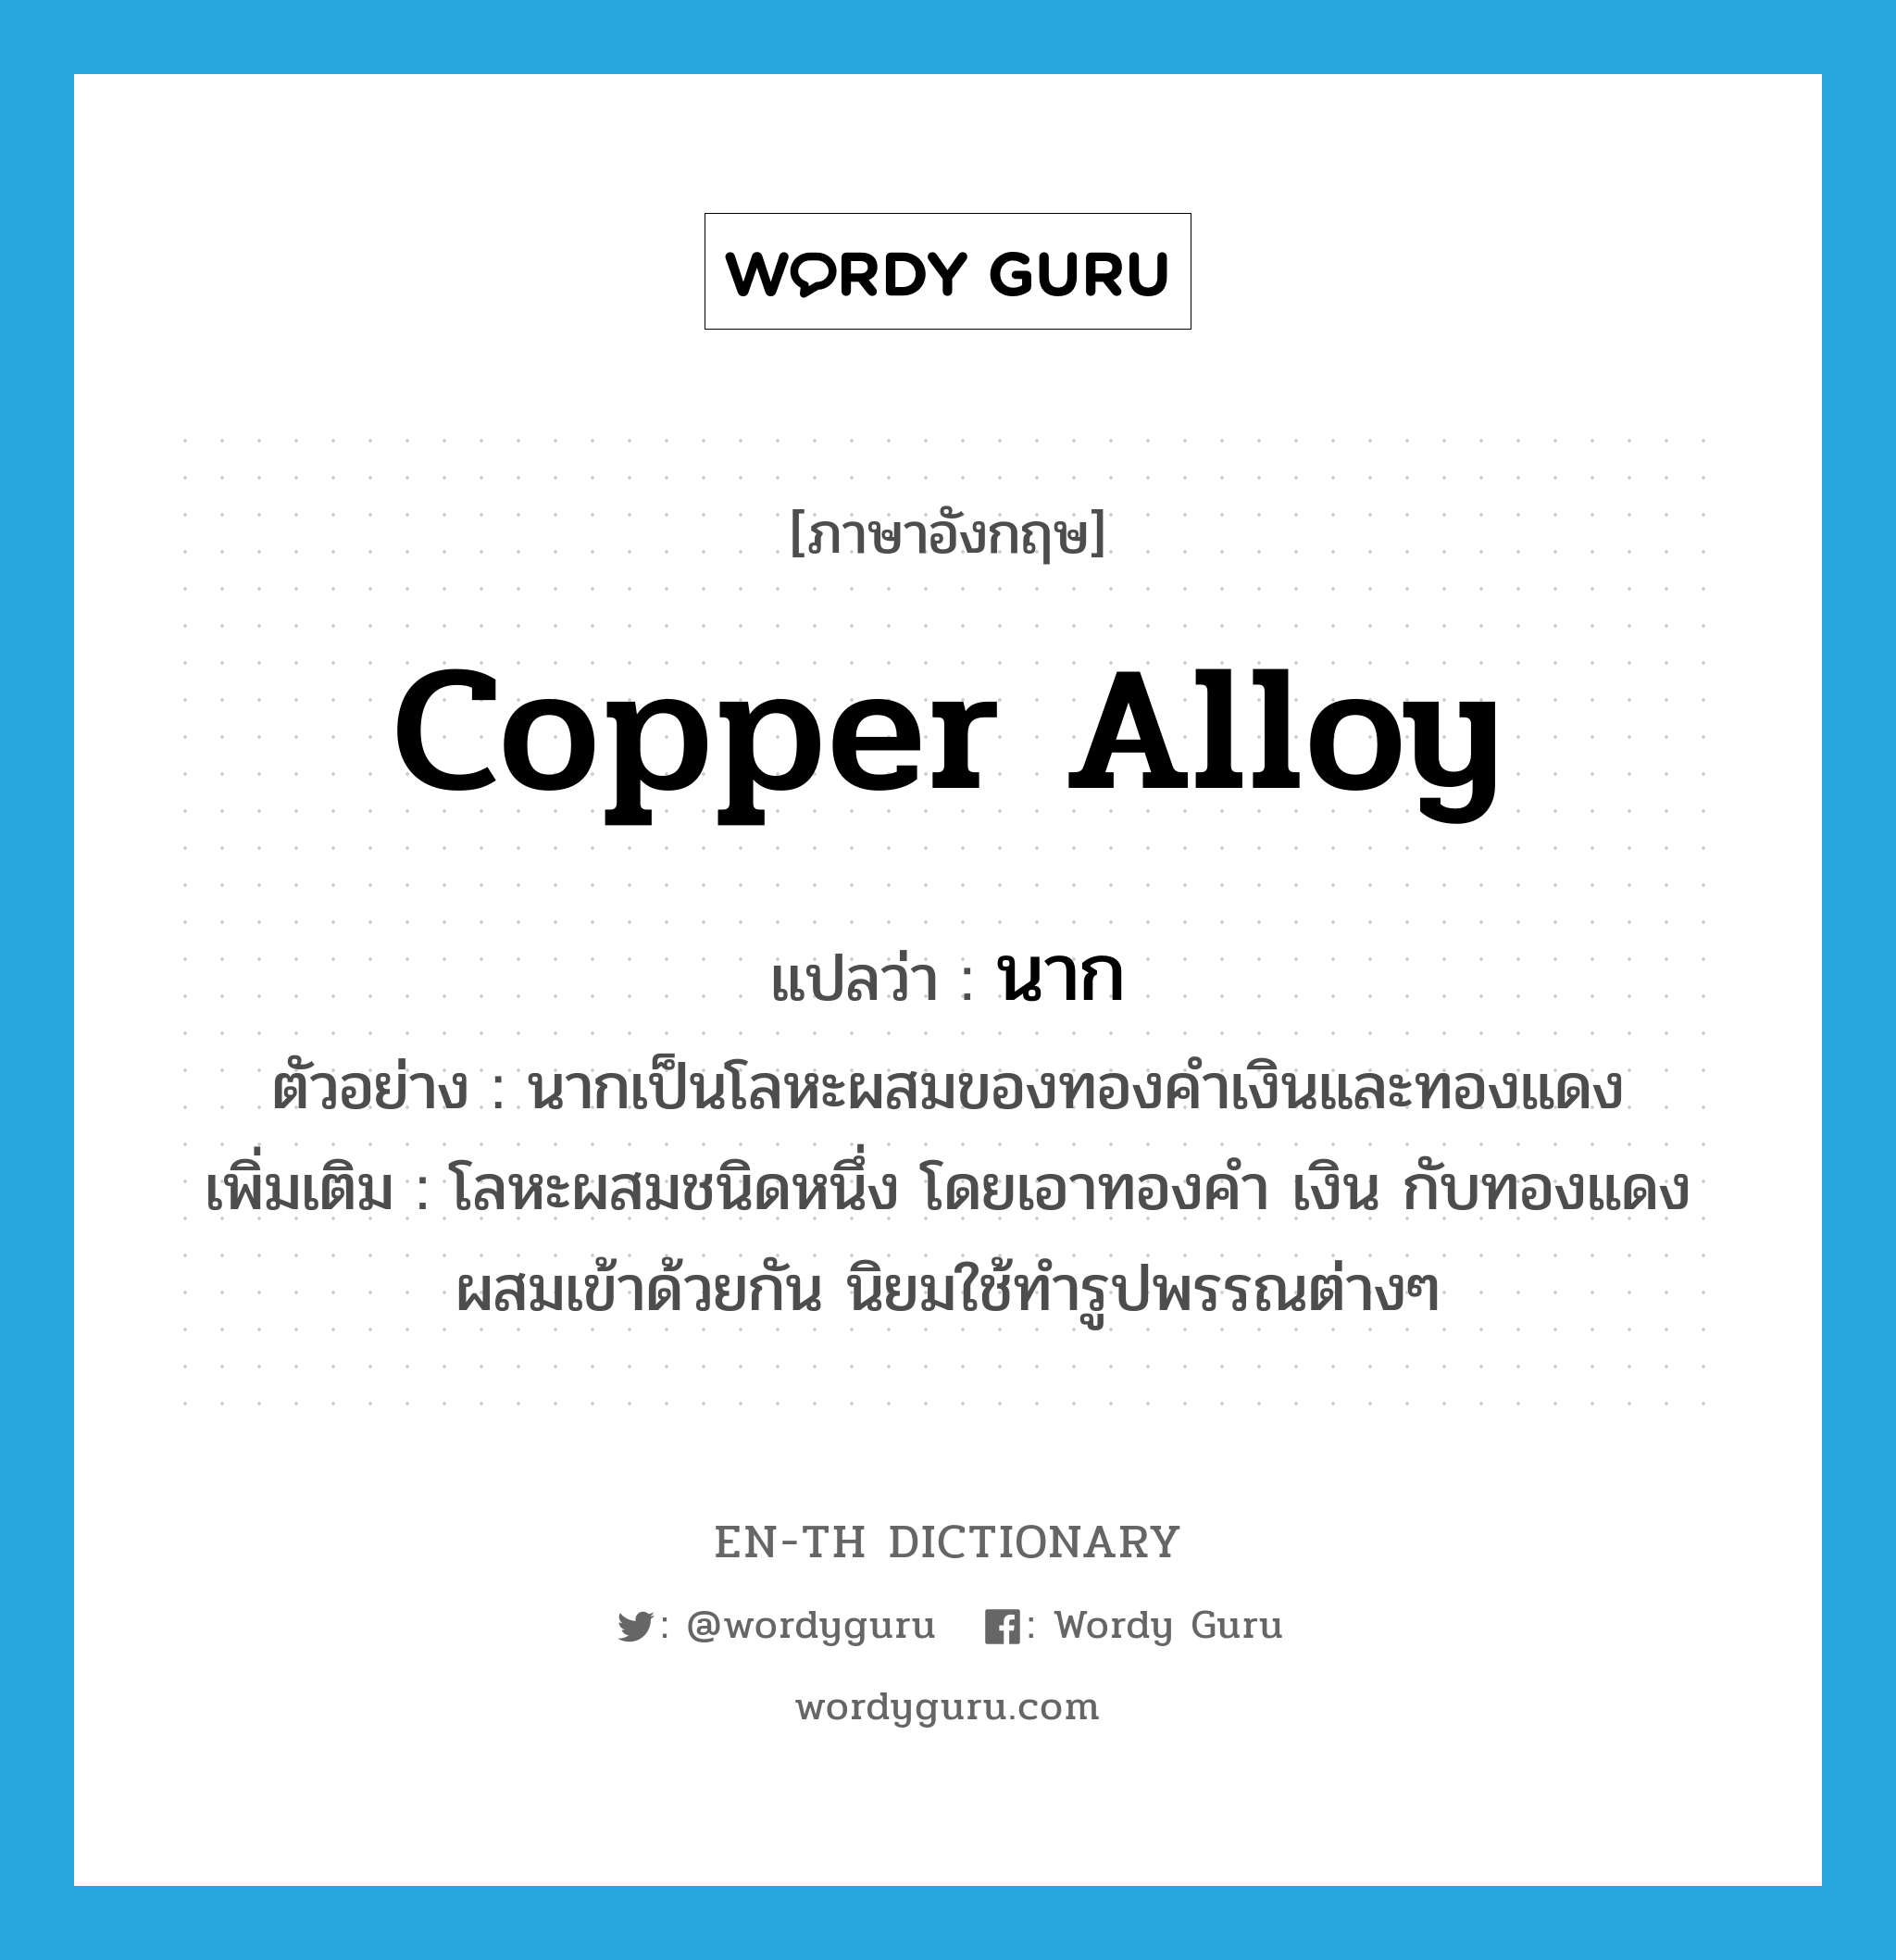 copper alloy แปลว่า?, คำศัพท์ภาษาอังกฤษ copper alloy แปลว่า นาก ประเภท ADJ ตัวอย่าง นากเป็นโลหะผสมของทองคำเงินและทองแดง เพิ่มเติม โลหะผสมชนิดหนึ่ง โดยเอาทองคำ เงิน กับทองแดงผสมเข้าด้วยกัน นิยมใช้ทำรูปพรรณต่างๆ หมวด ADJ